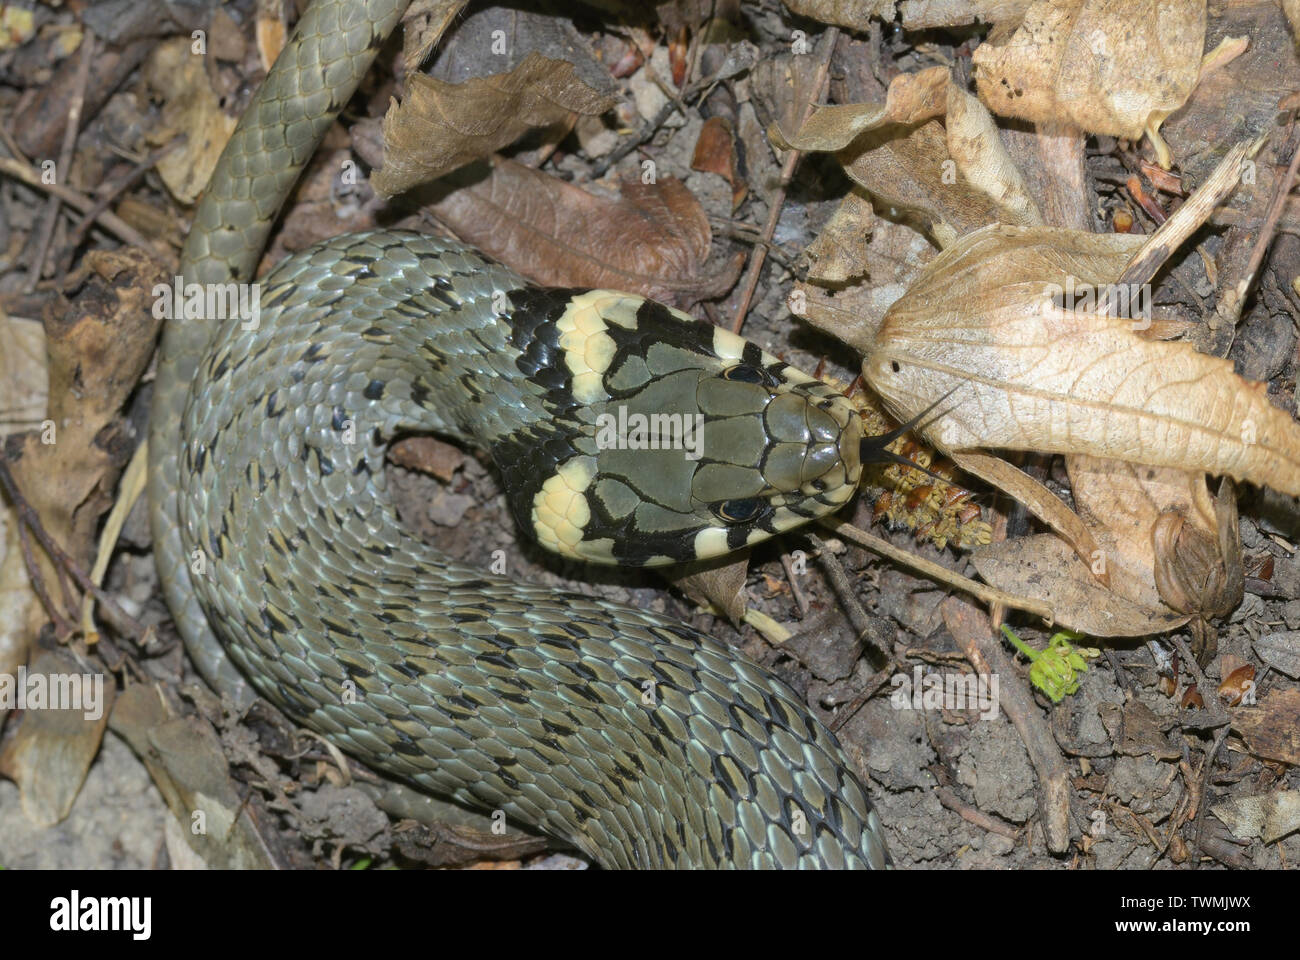 Natrix natrix, Grass snake, Ringelnatter Stock Photo